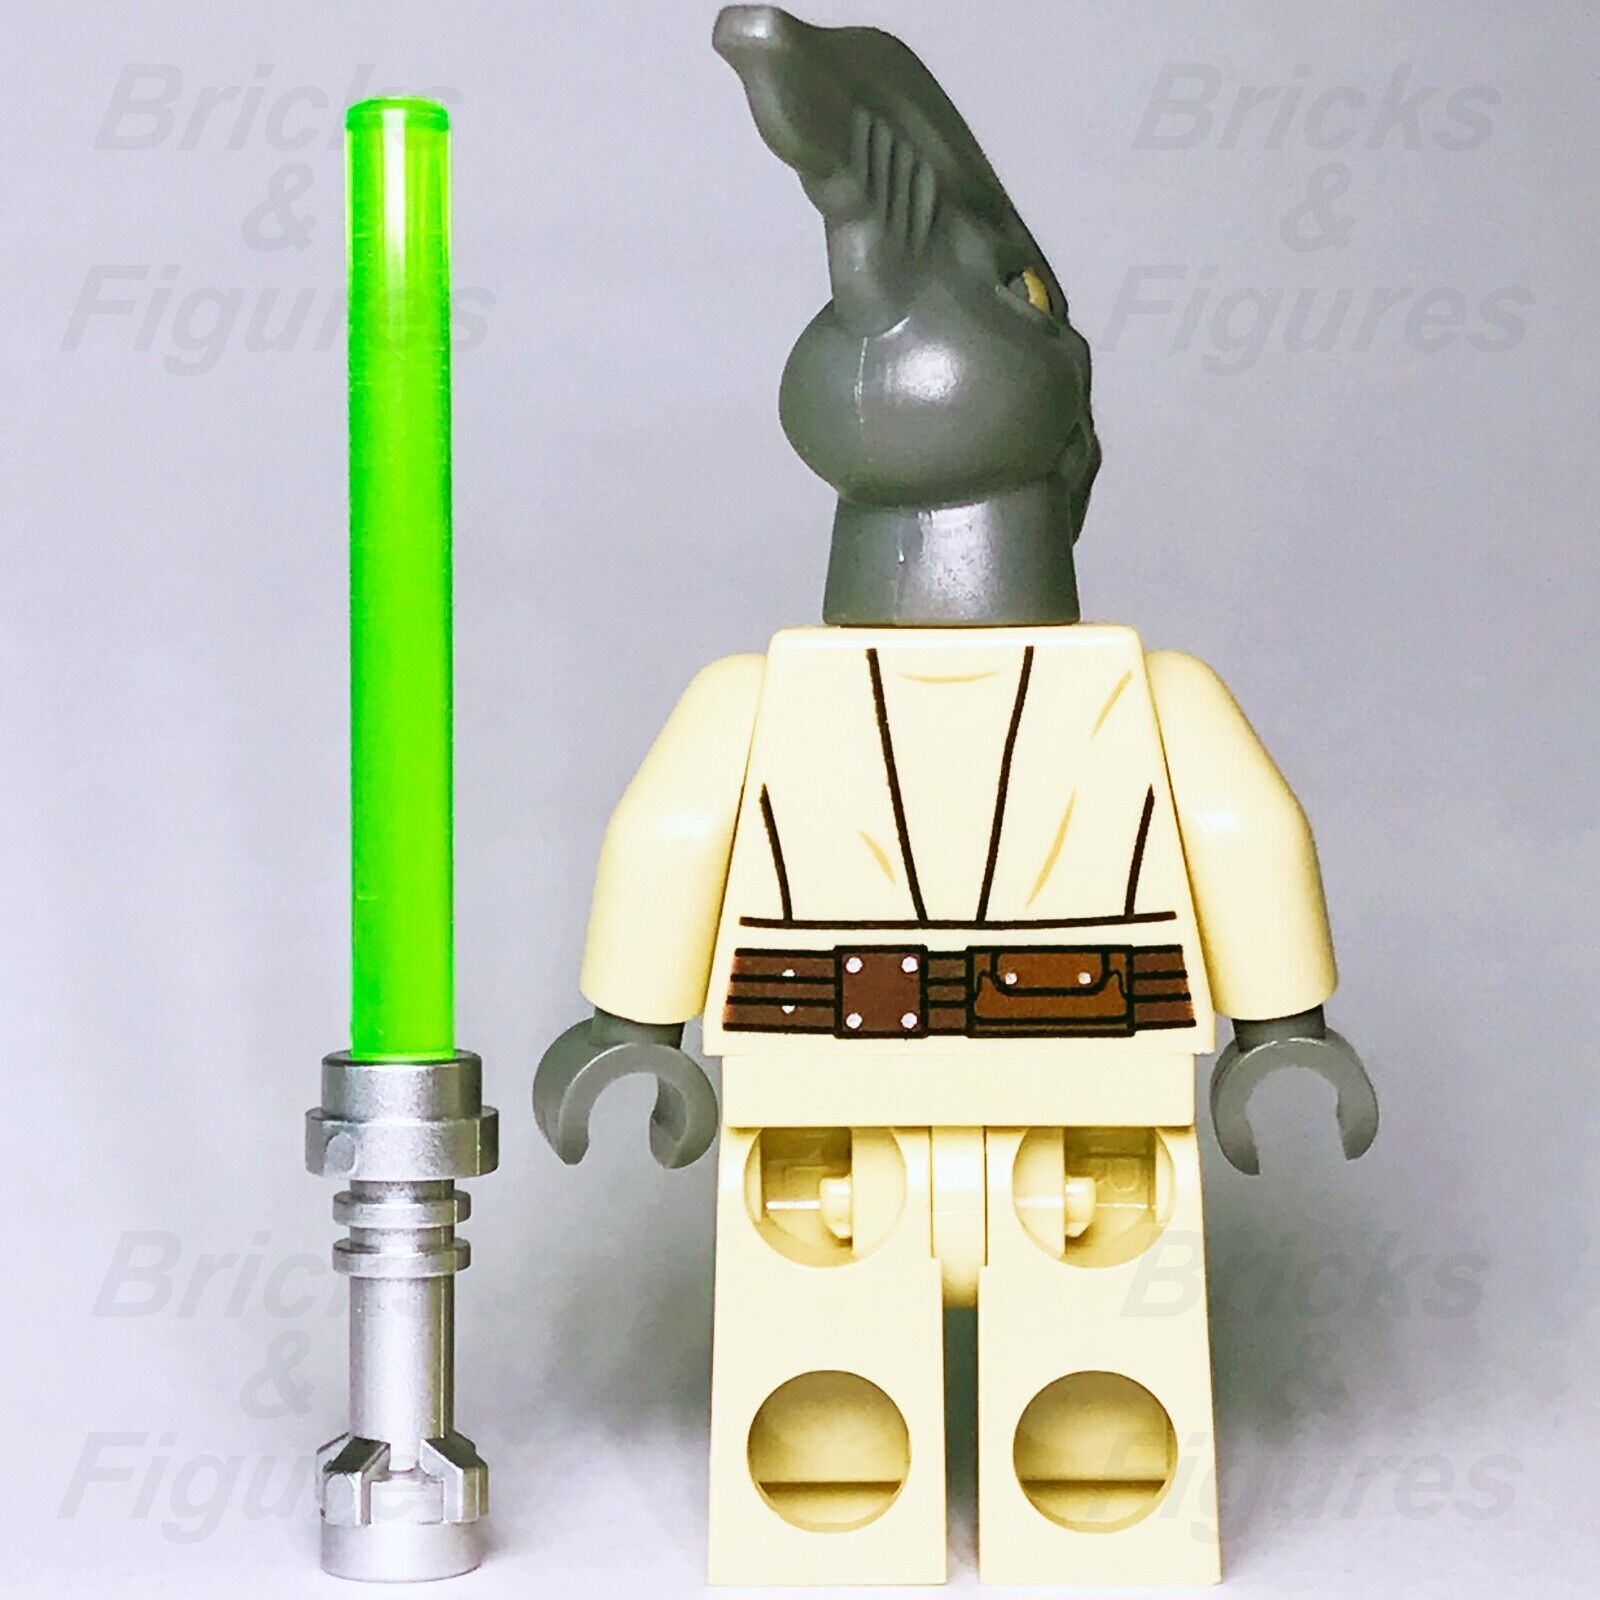 LEGO Star Wars Coleman Trebor Minifigure Attack of the Clones Jedi 75019 sw0480